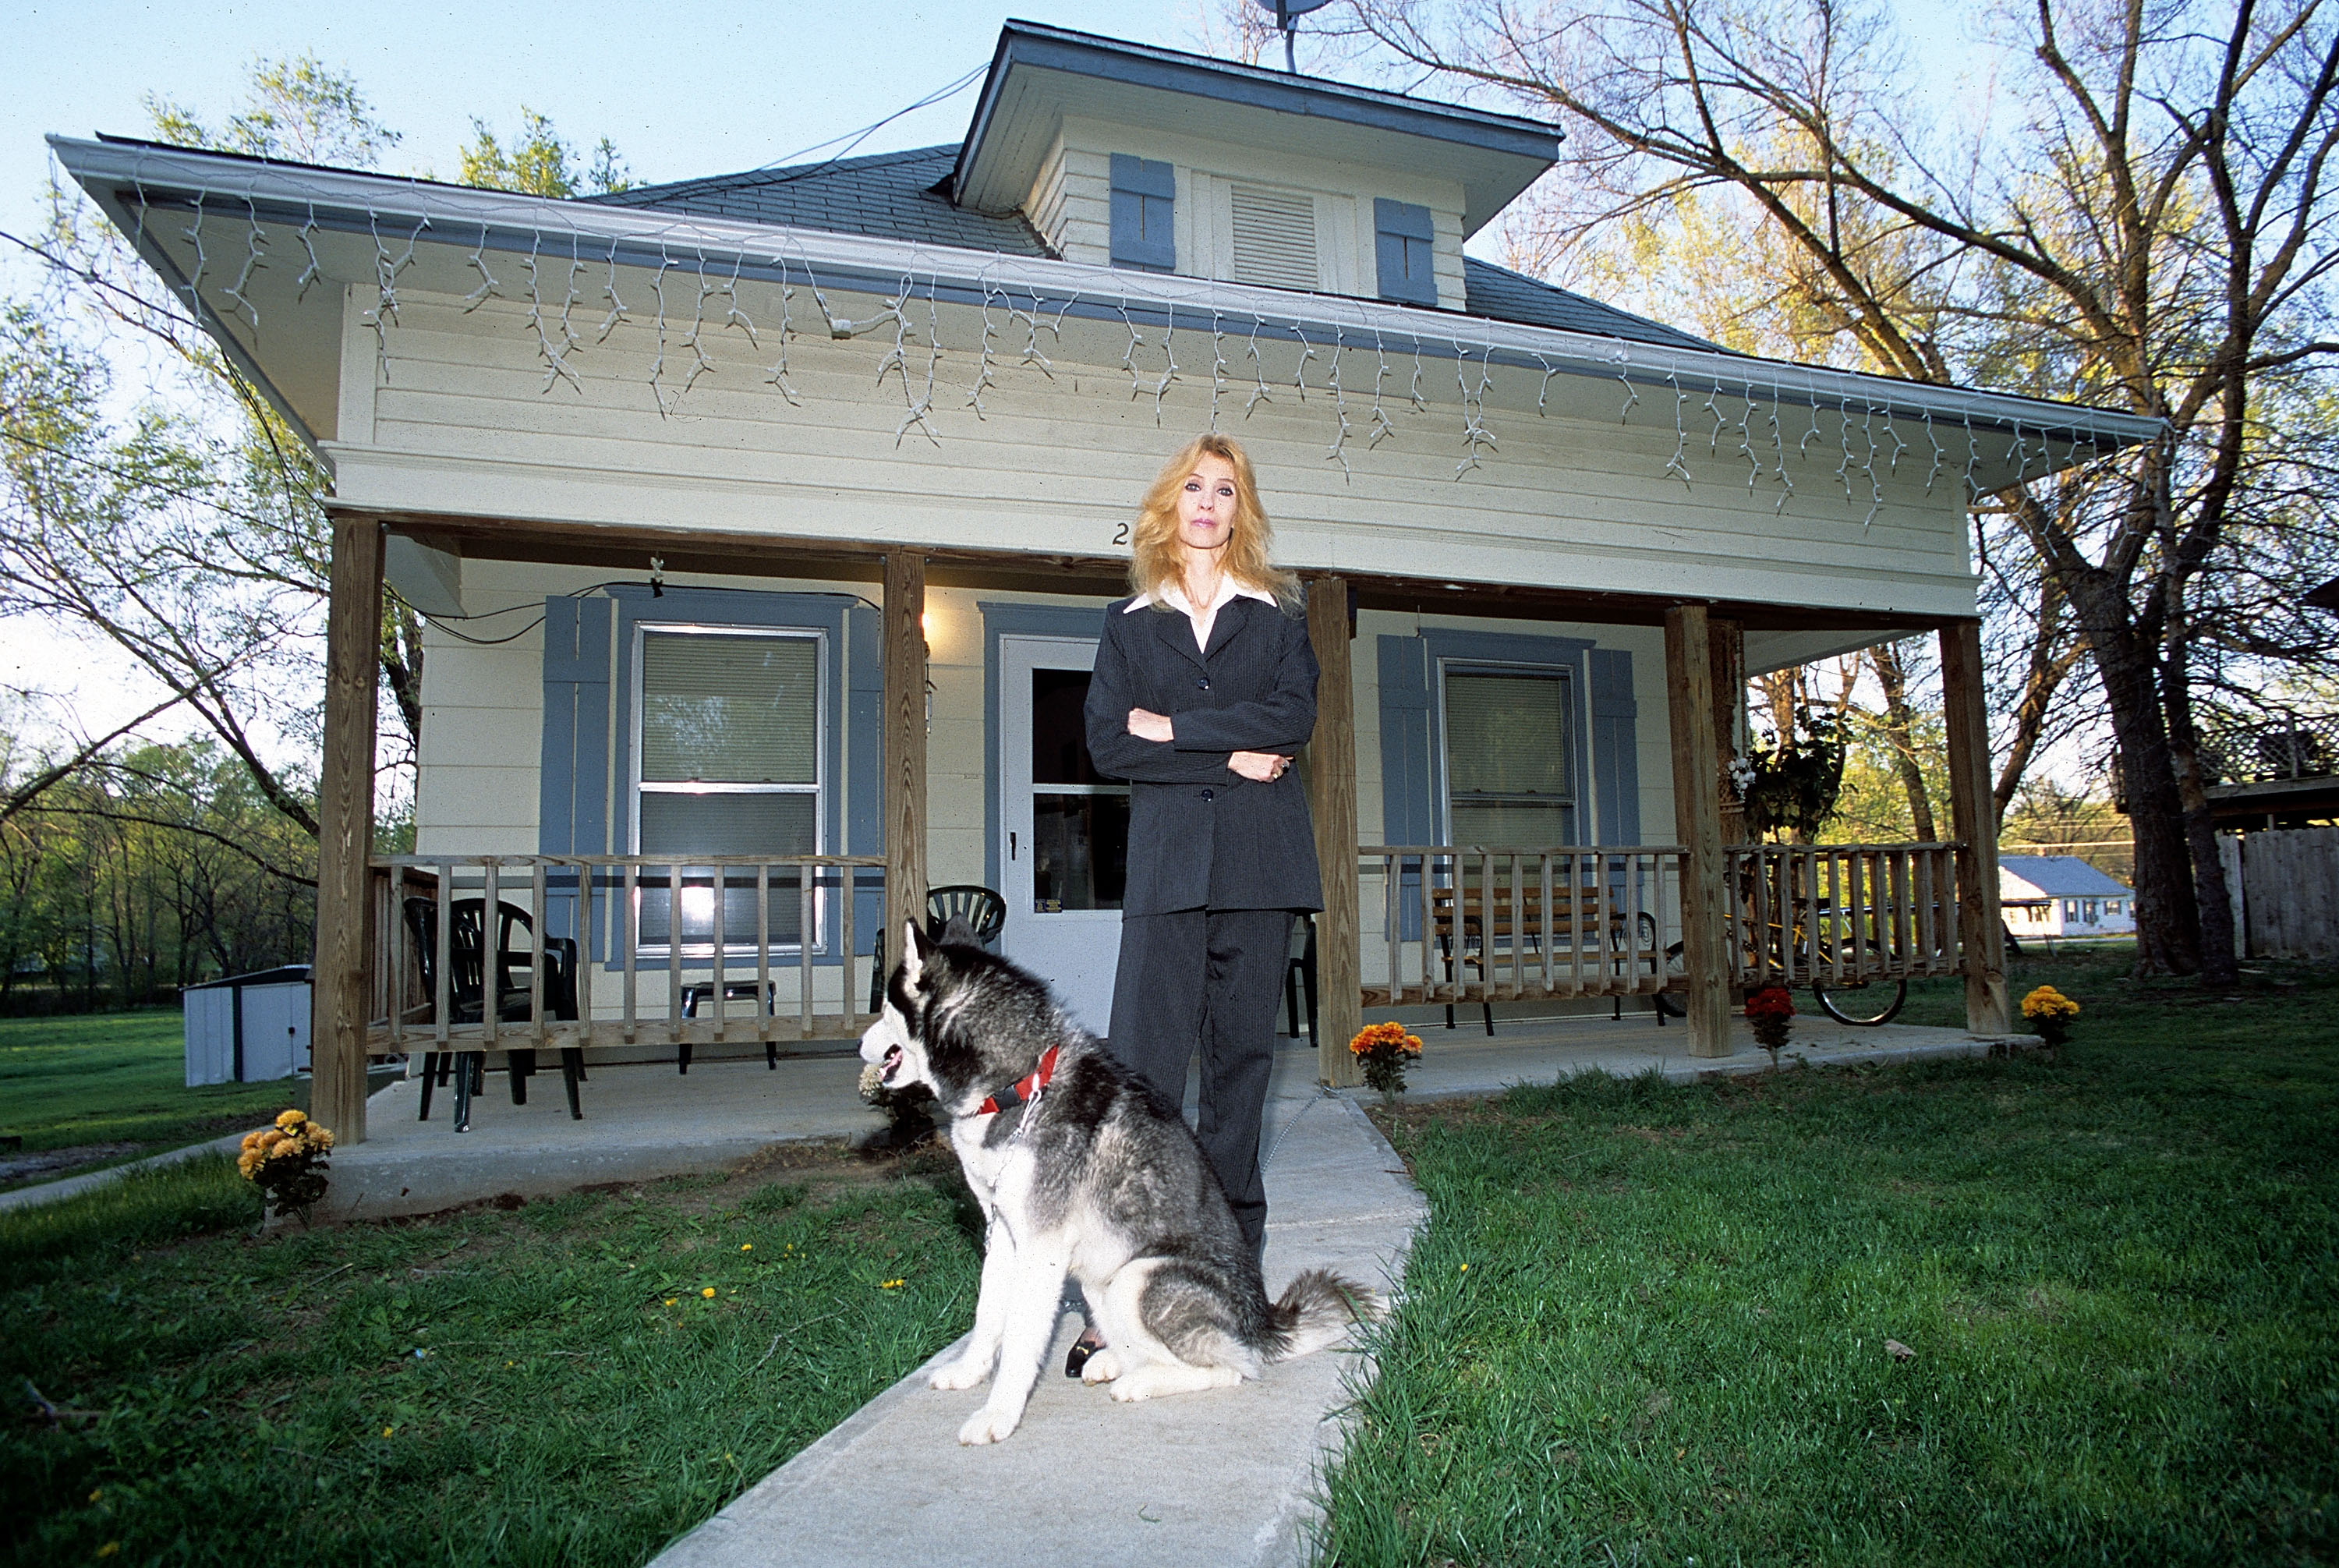 Debbie Mathers, madre de Eminem, durante una sesión de retratos en el exterior de su casa en septiembre de 2005 en Detroit, Michigan | Fuente: Getty Images